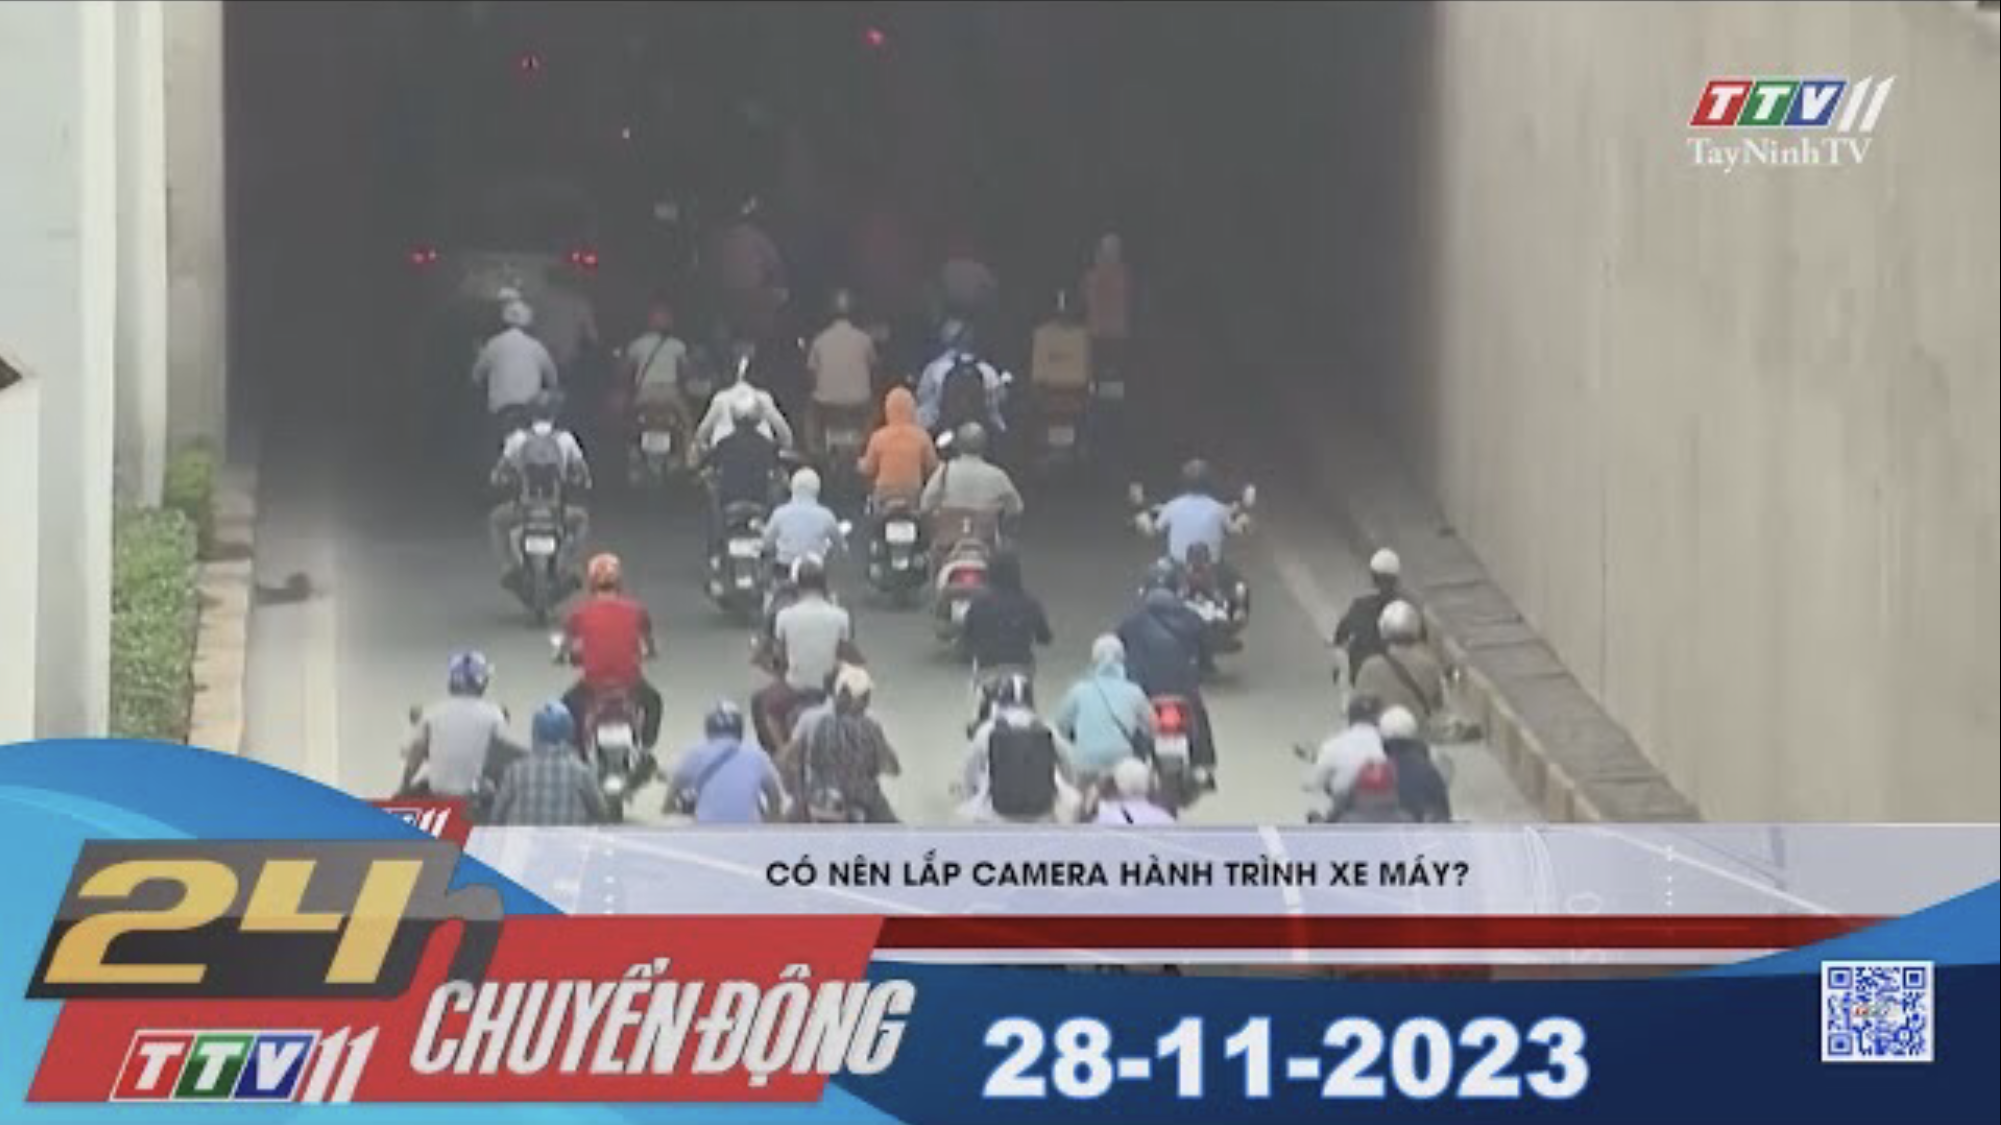 24h Chuyển động 28-11-2023 | Tin tức hôm nay | TayNinhTV